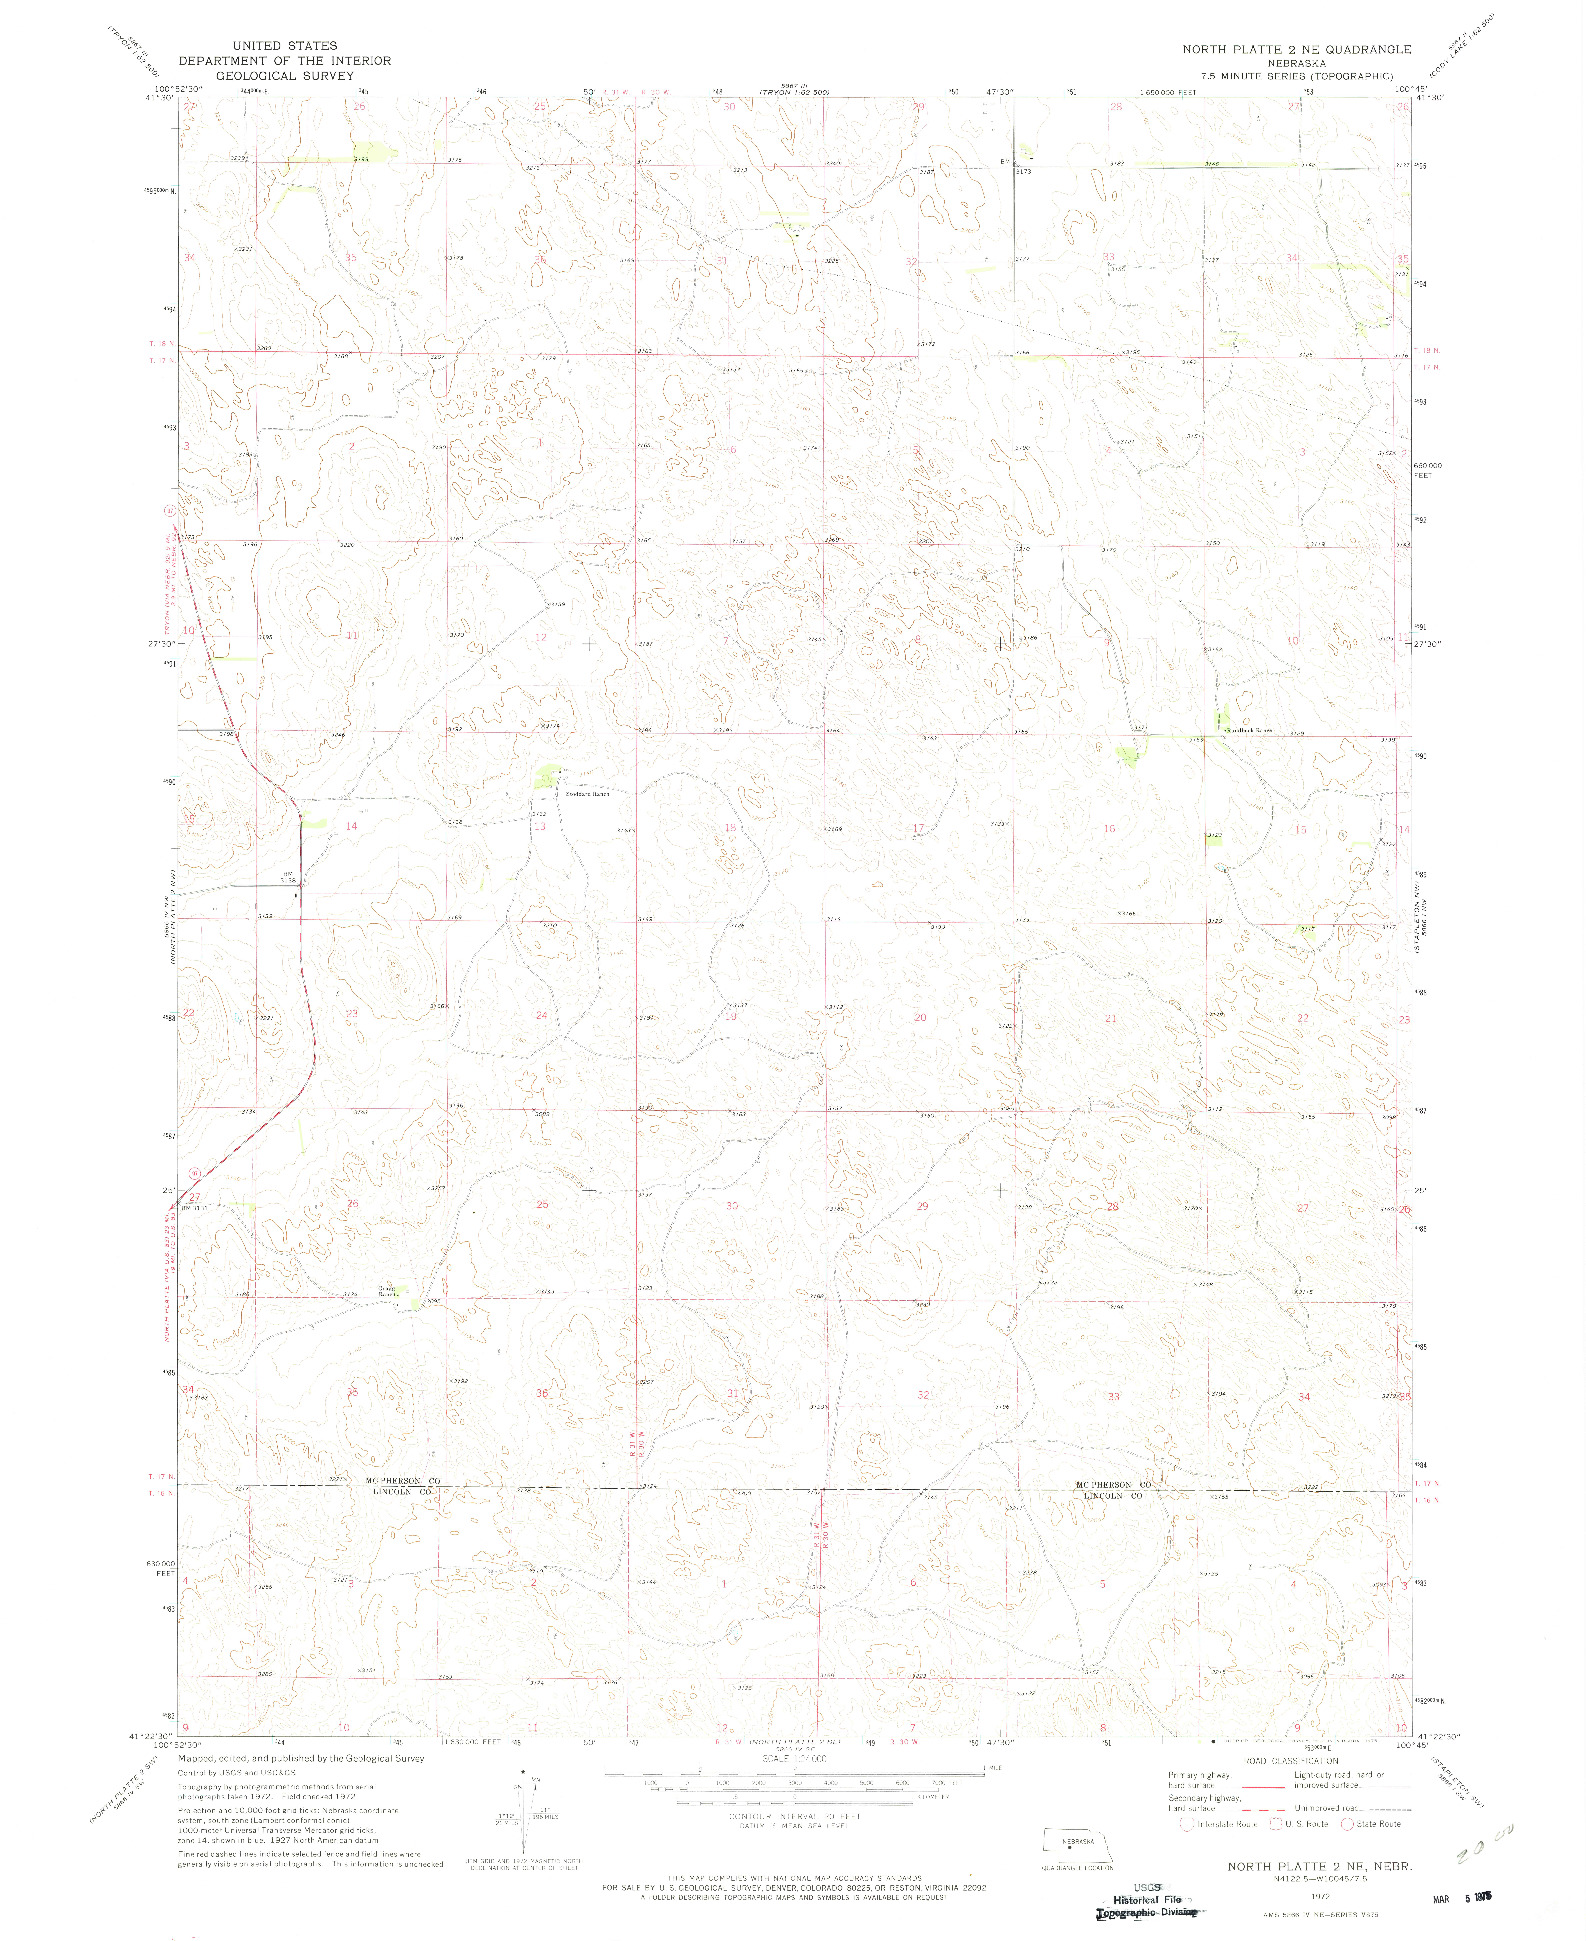 USGS 1:24000-SCALE QUADRANGLE FOR NORTH PLATTE 2 NE, NE 1972